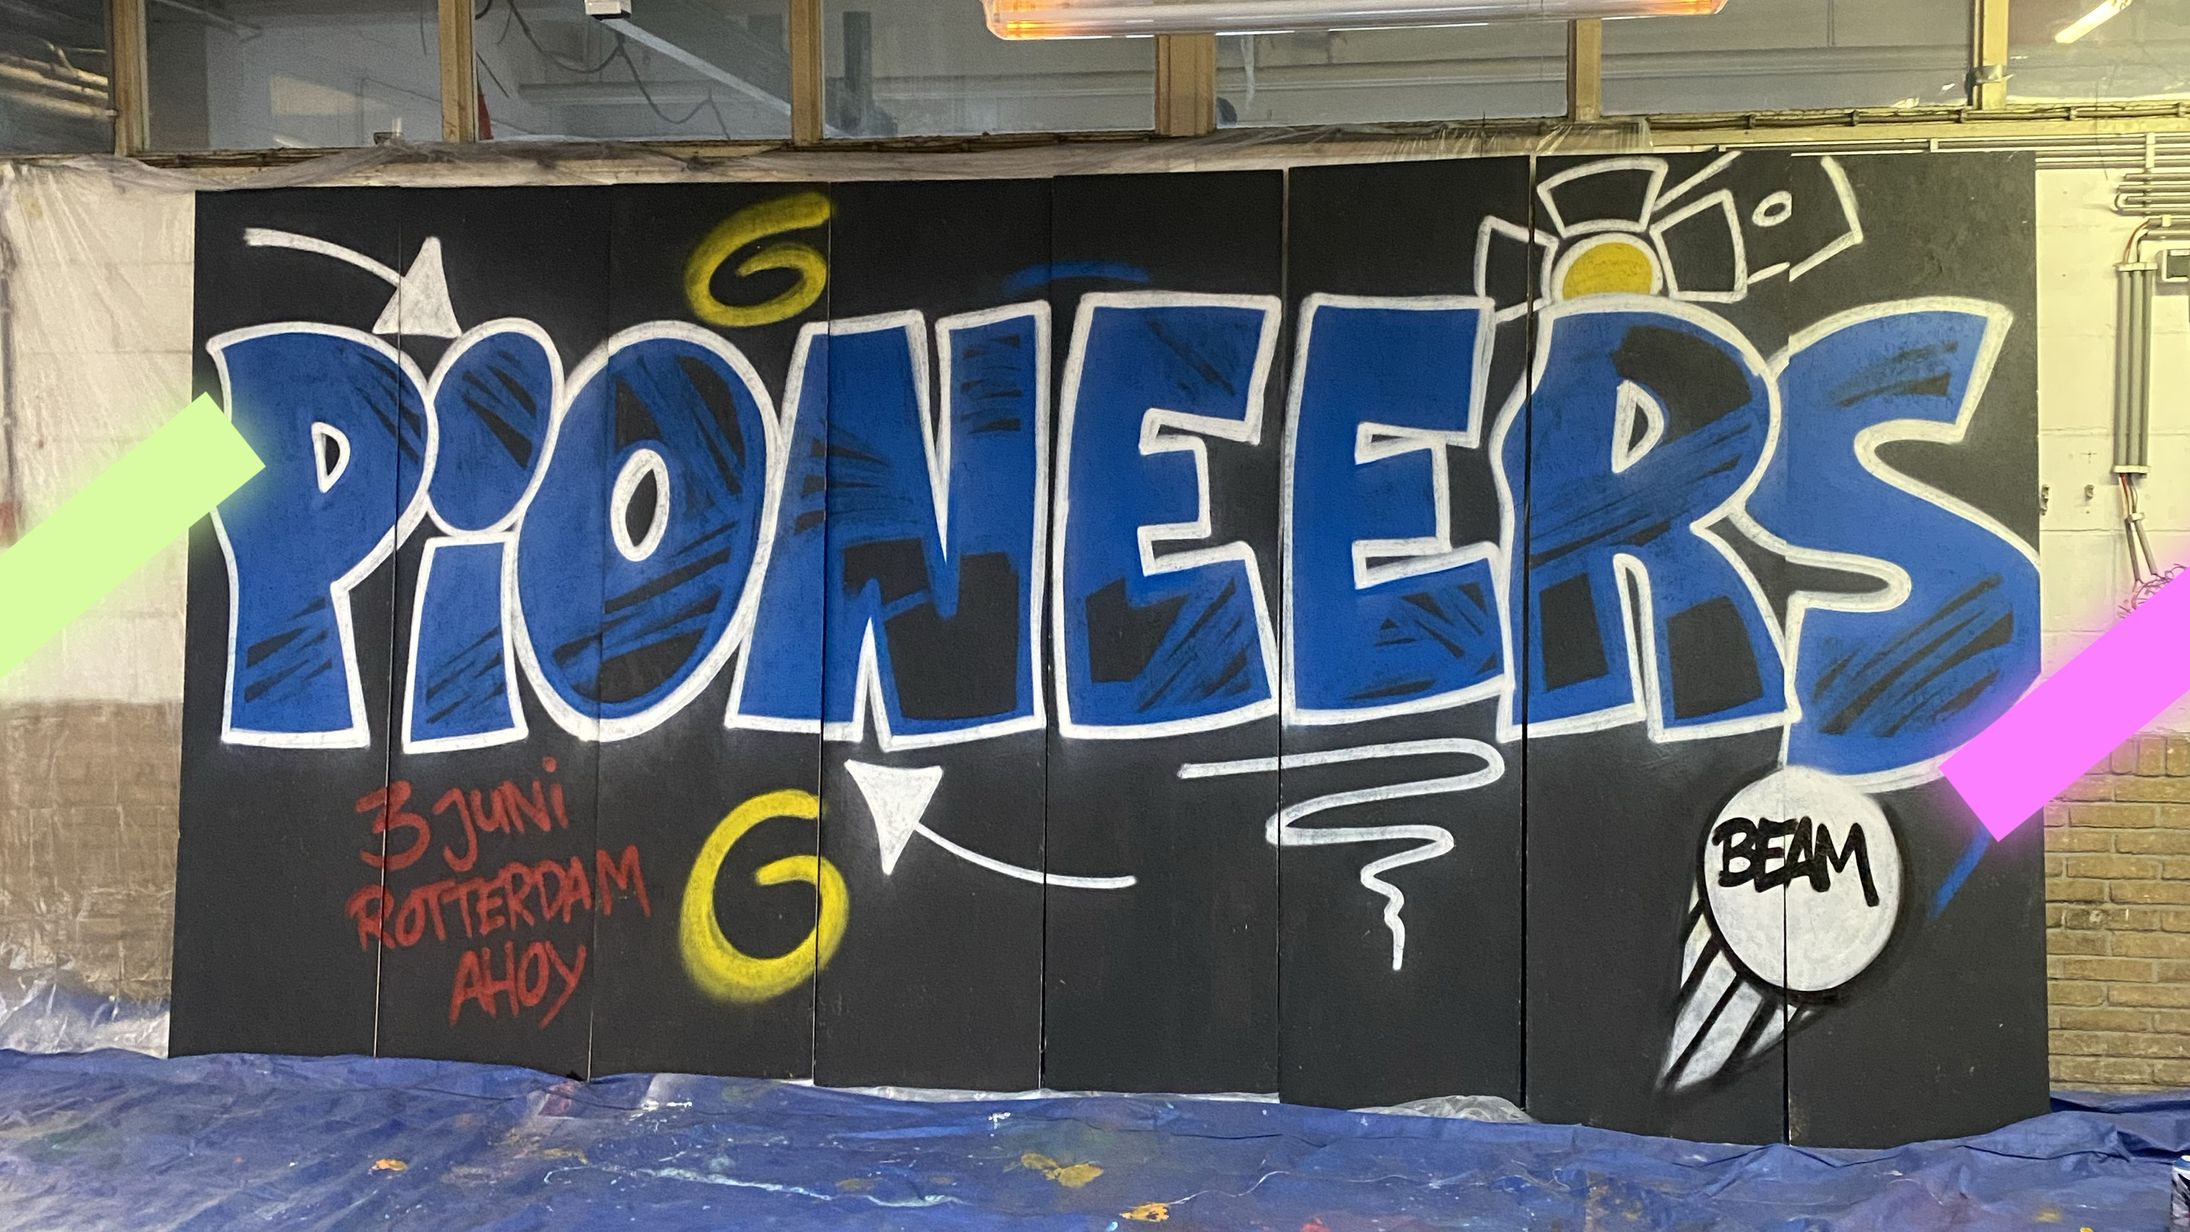 Check hier wie de Pioneers graffiti voor de EO-Jongerendag heeft gemaakt!